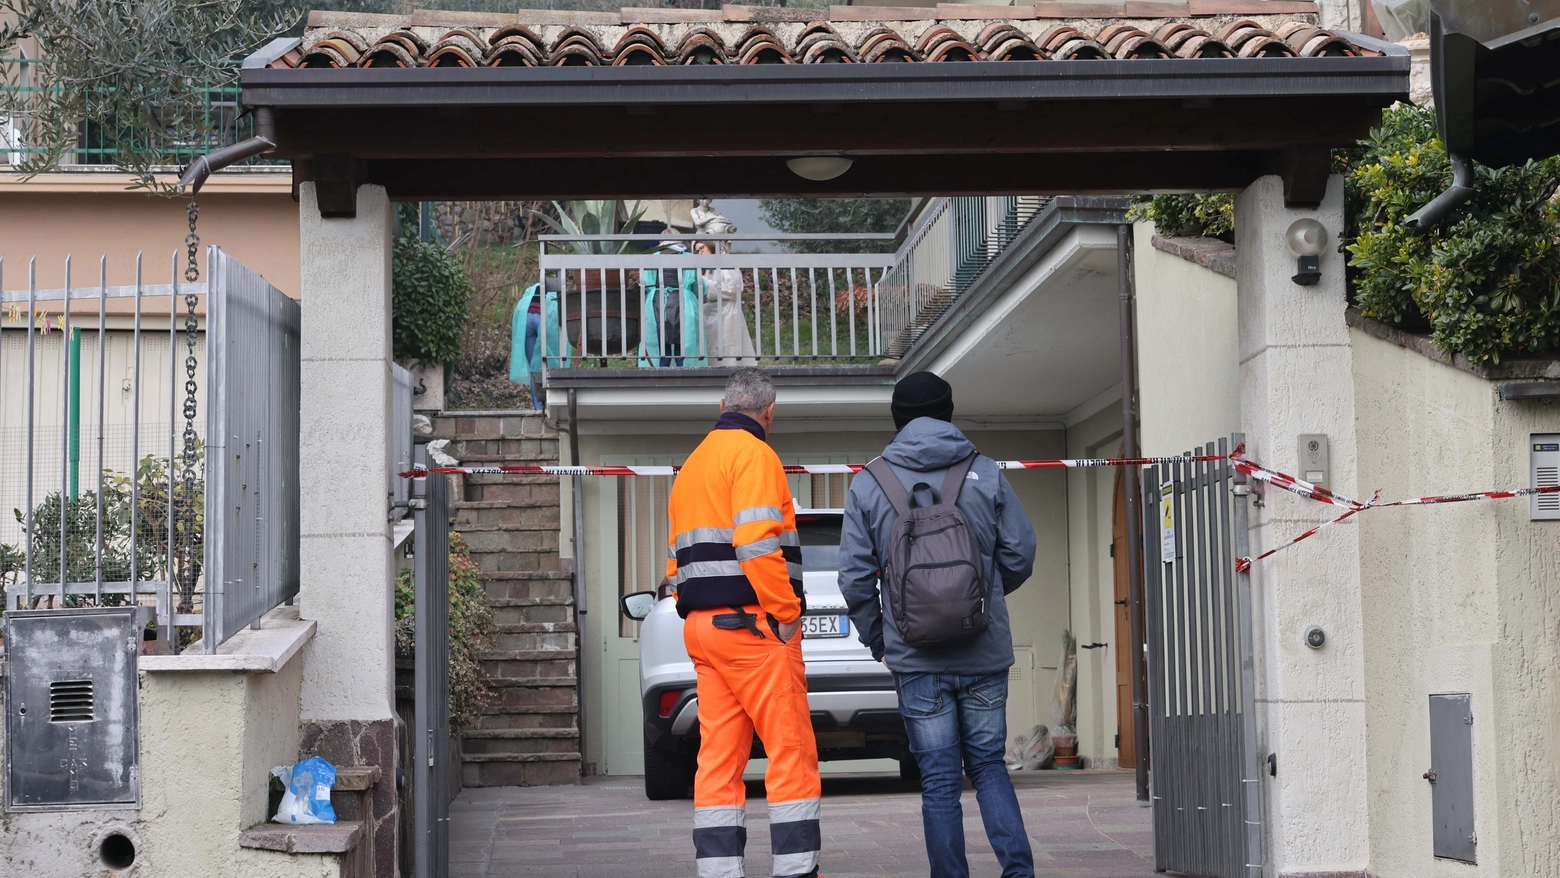 Mauro Pedrotti, l'uomo in tutta arancione, ha confessato l'omicidio della madre